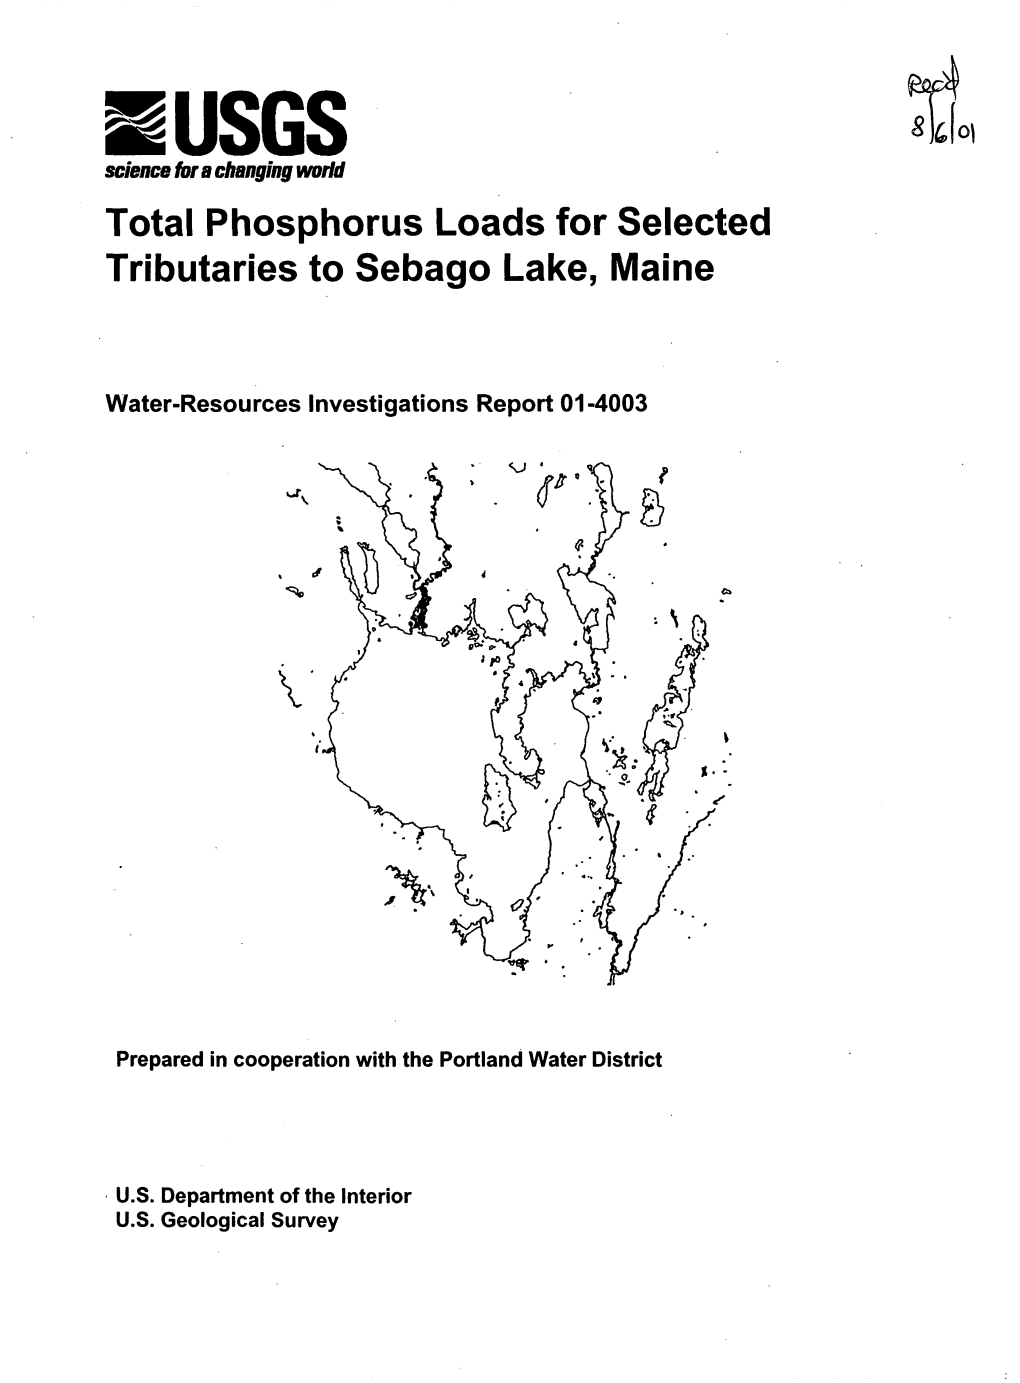 Total Phosphorus Loads for Selected Tributaries to Sebago Lake, Maine